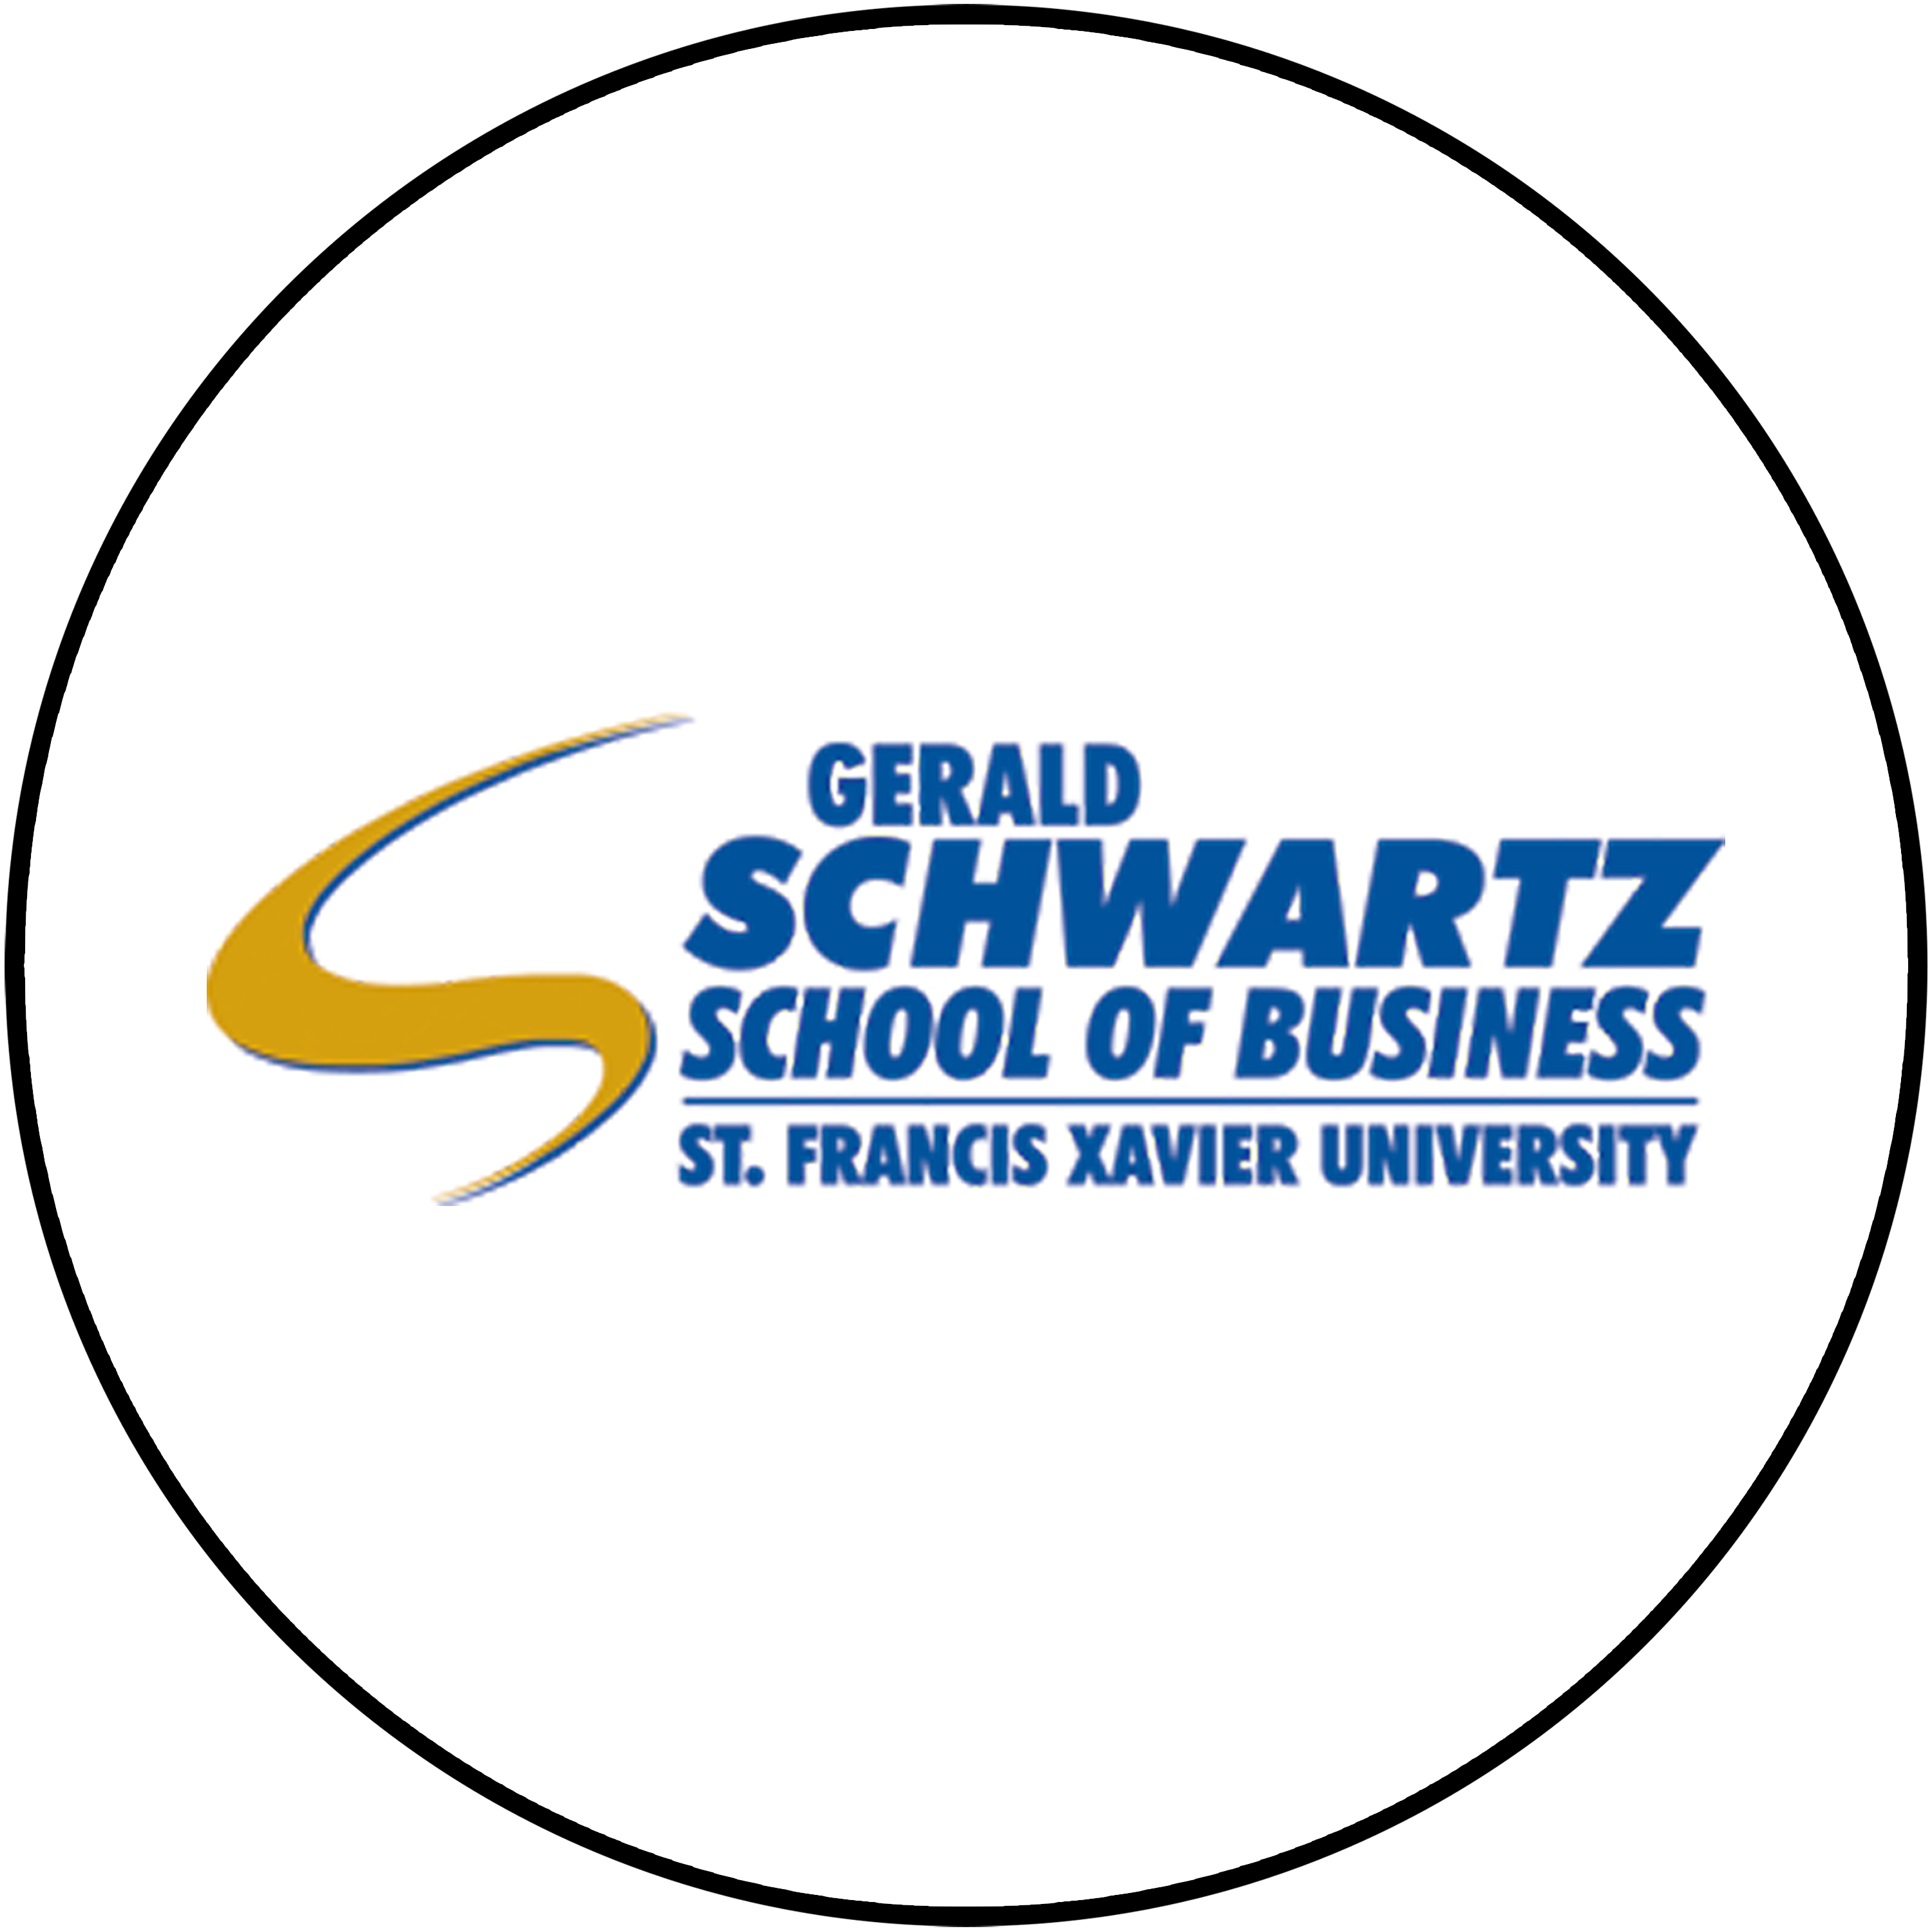 Gerald Schwartz School of Business logo